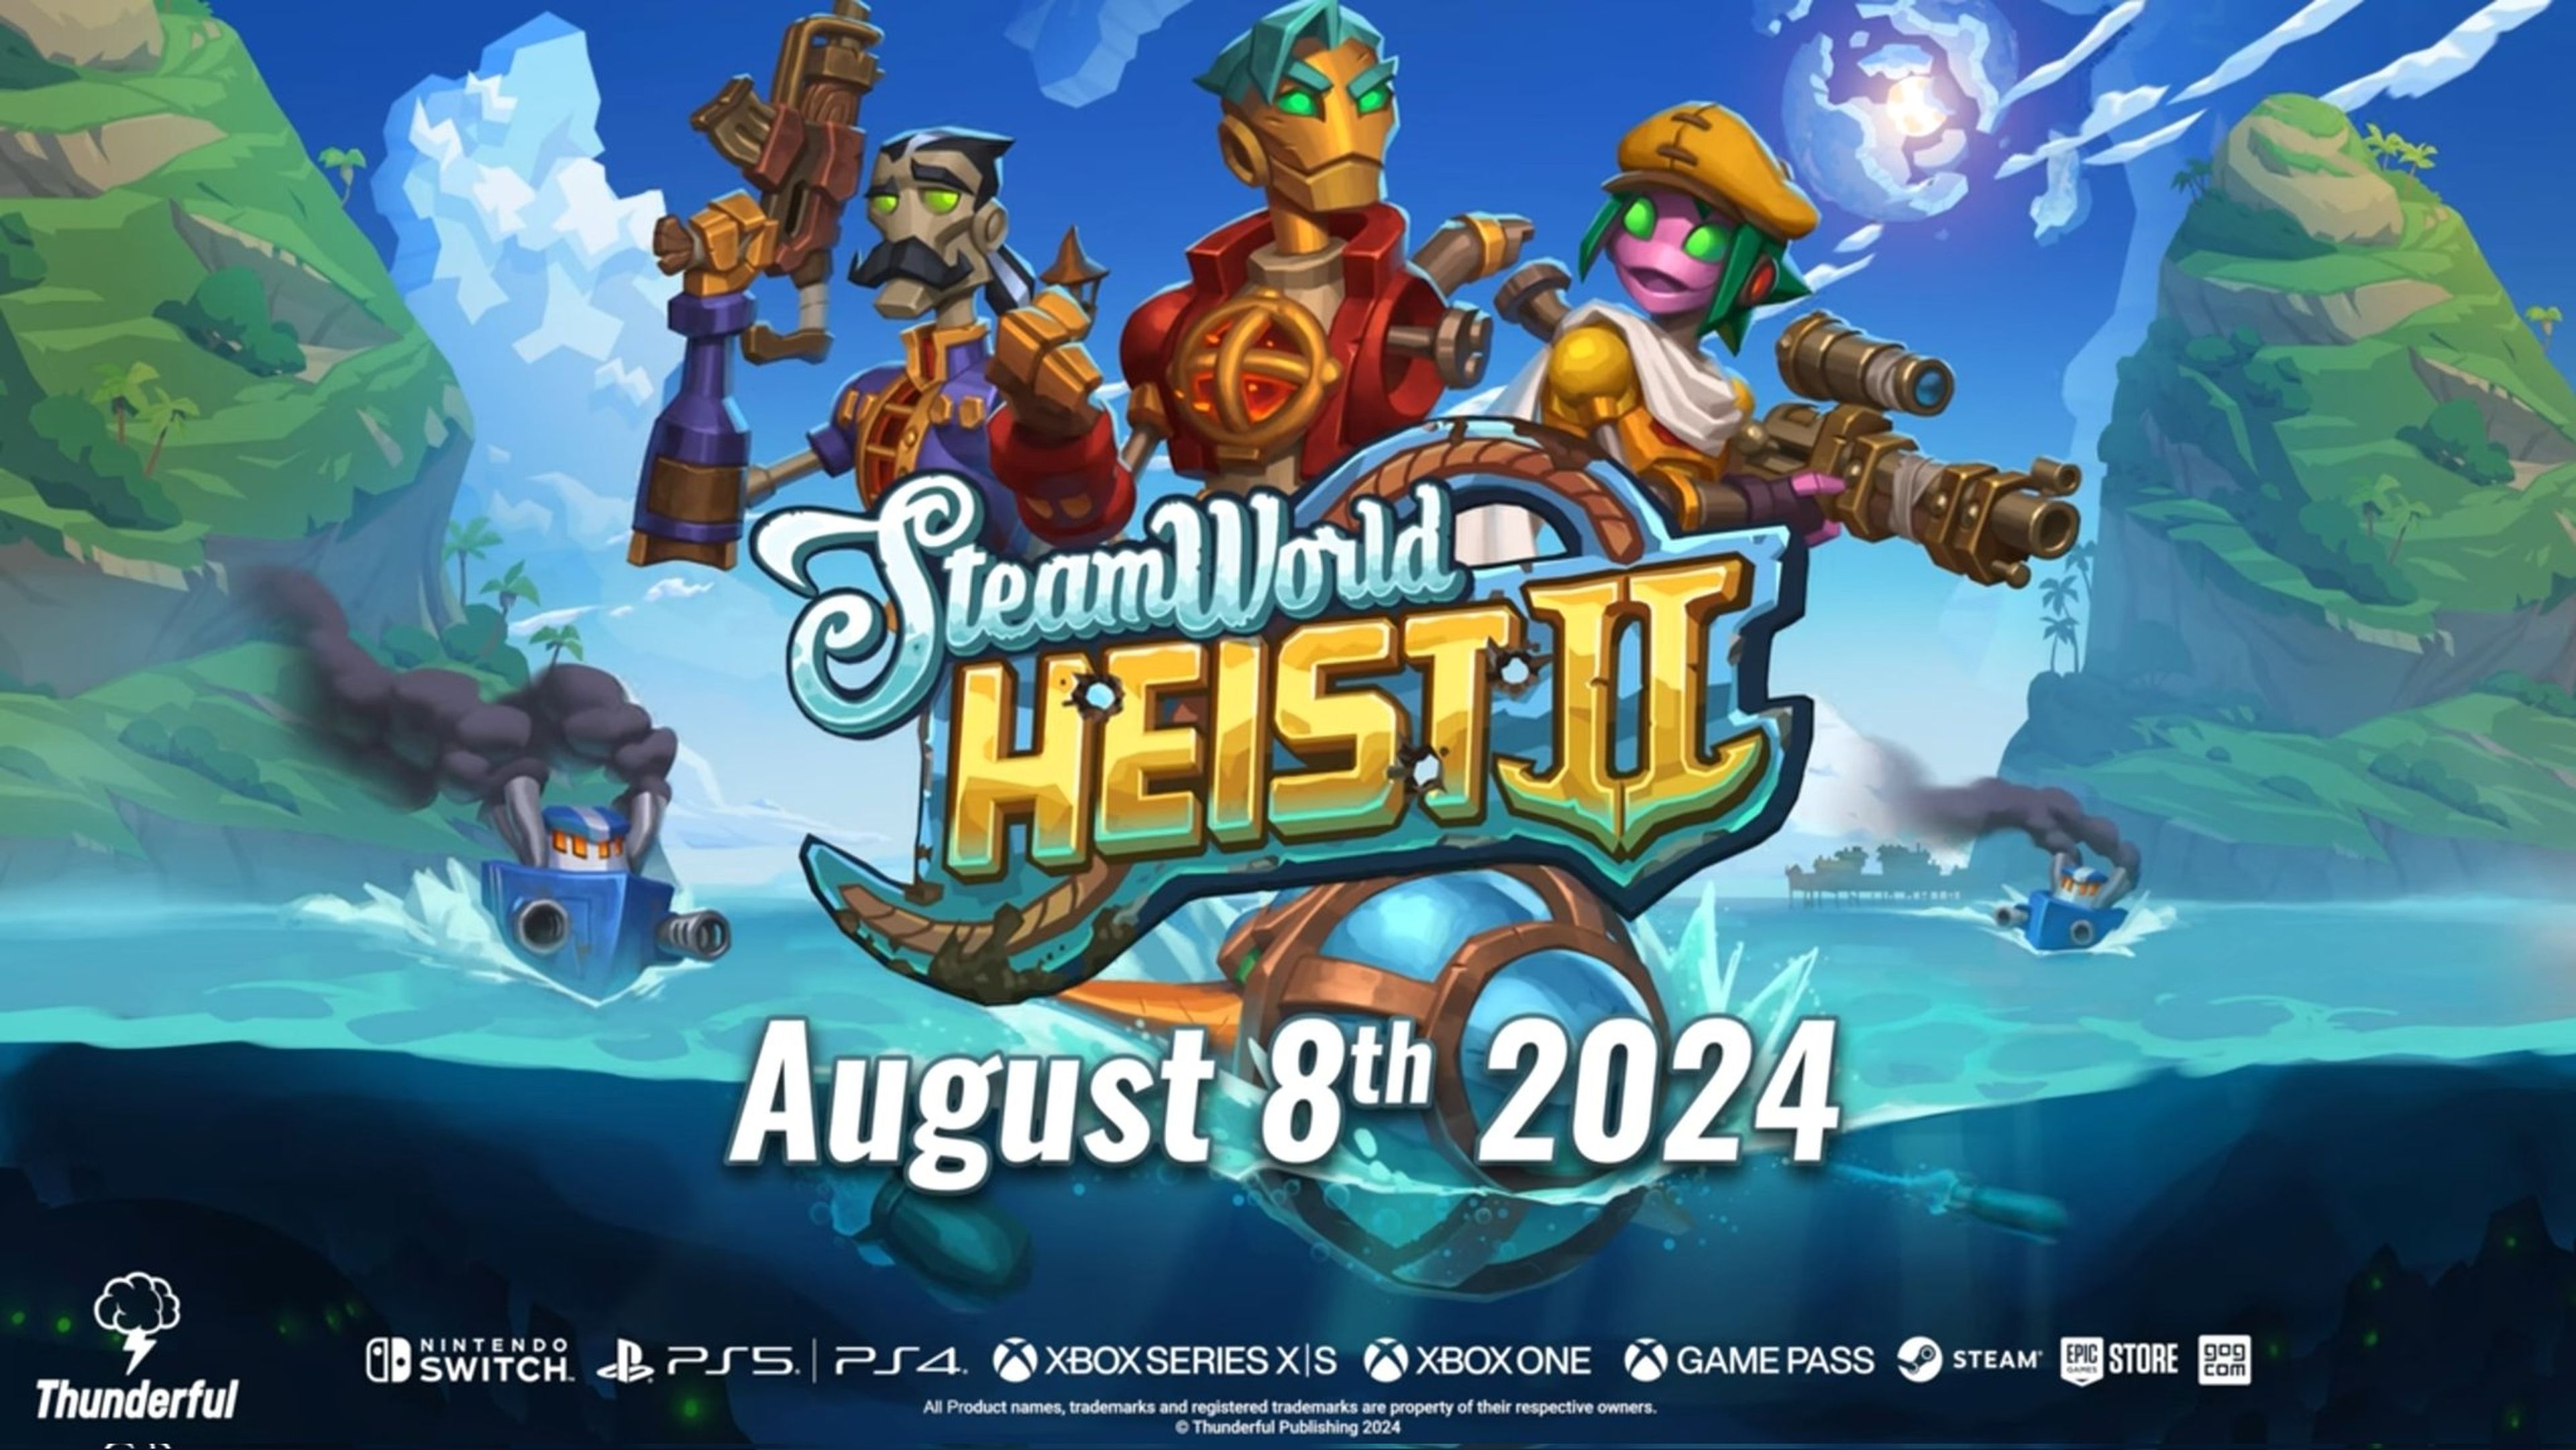 Steamworld Heist 2